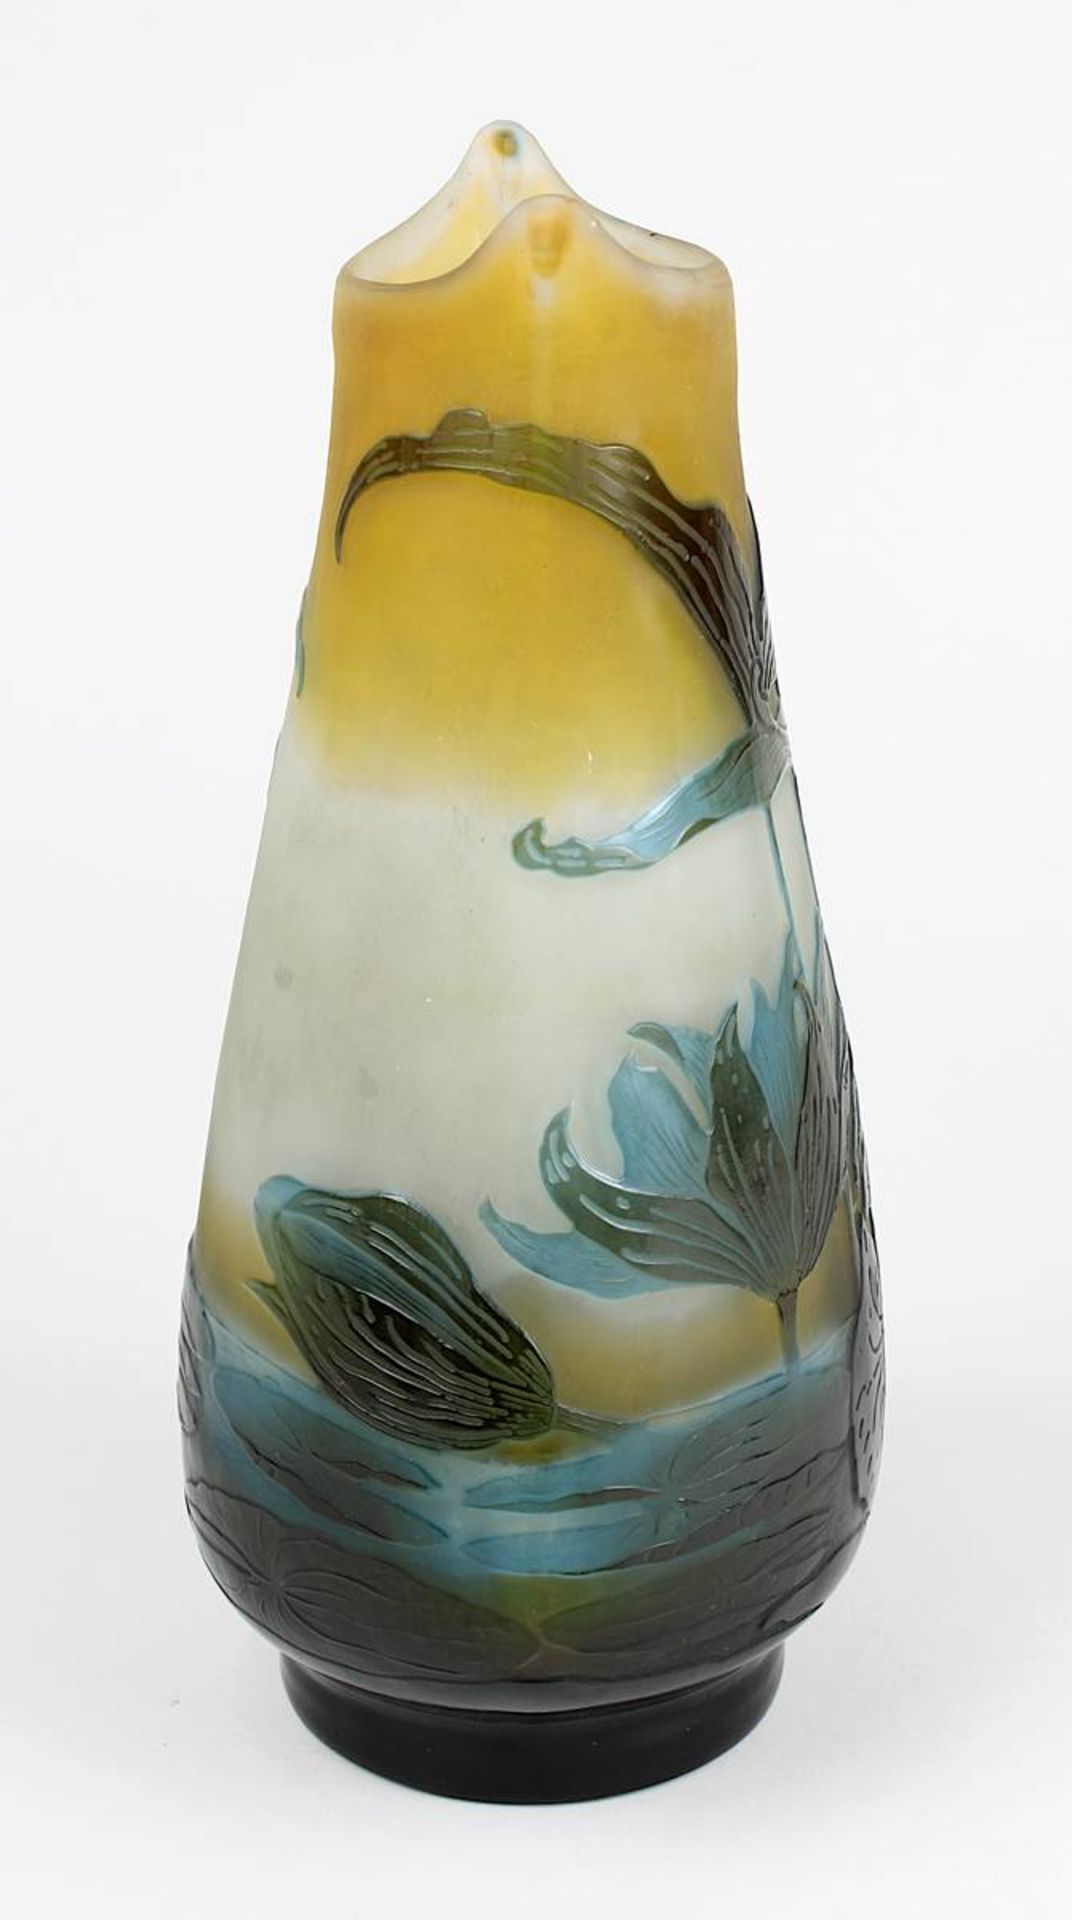 Gallé Jugendstilvase mit Seerosendekor, Nancy 1906 - 1914, seltene Gallé-Vase aus Klarglas, mit - Bild 4 aus 5